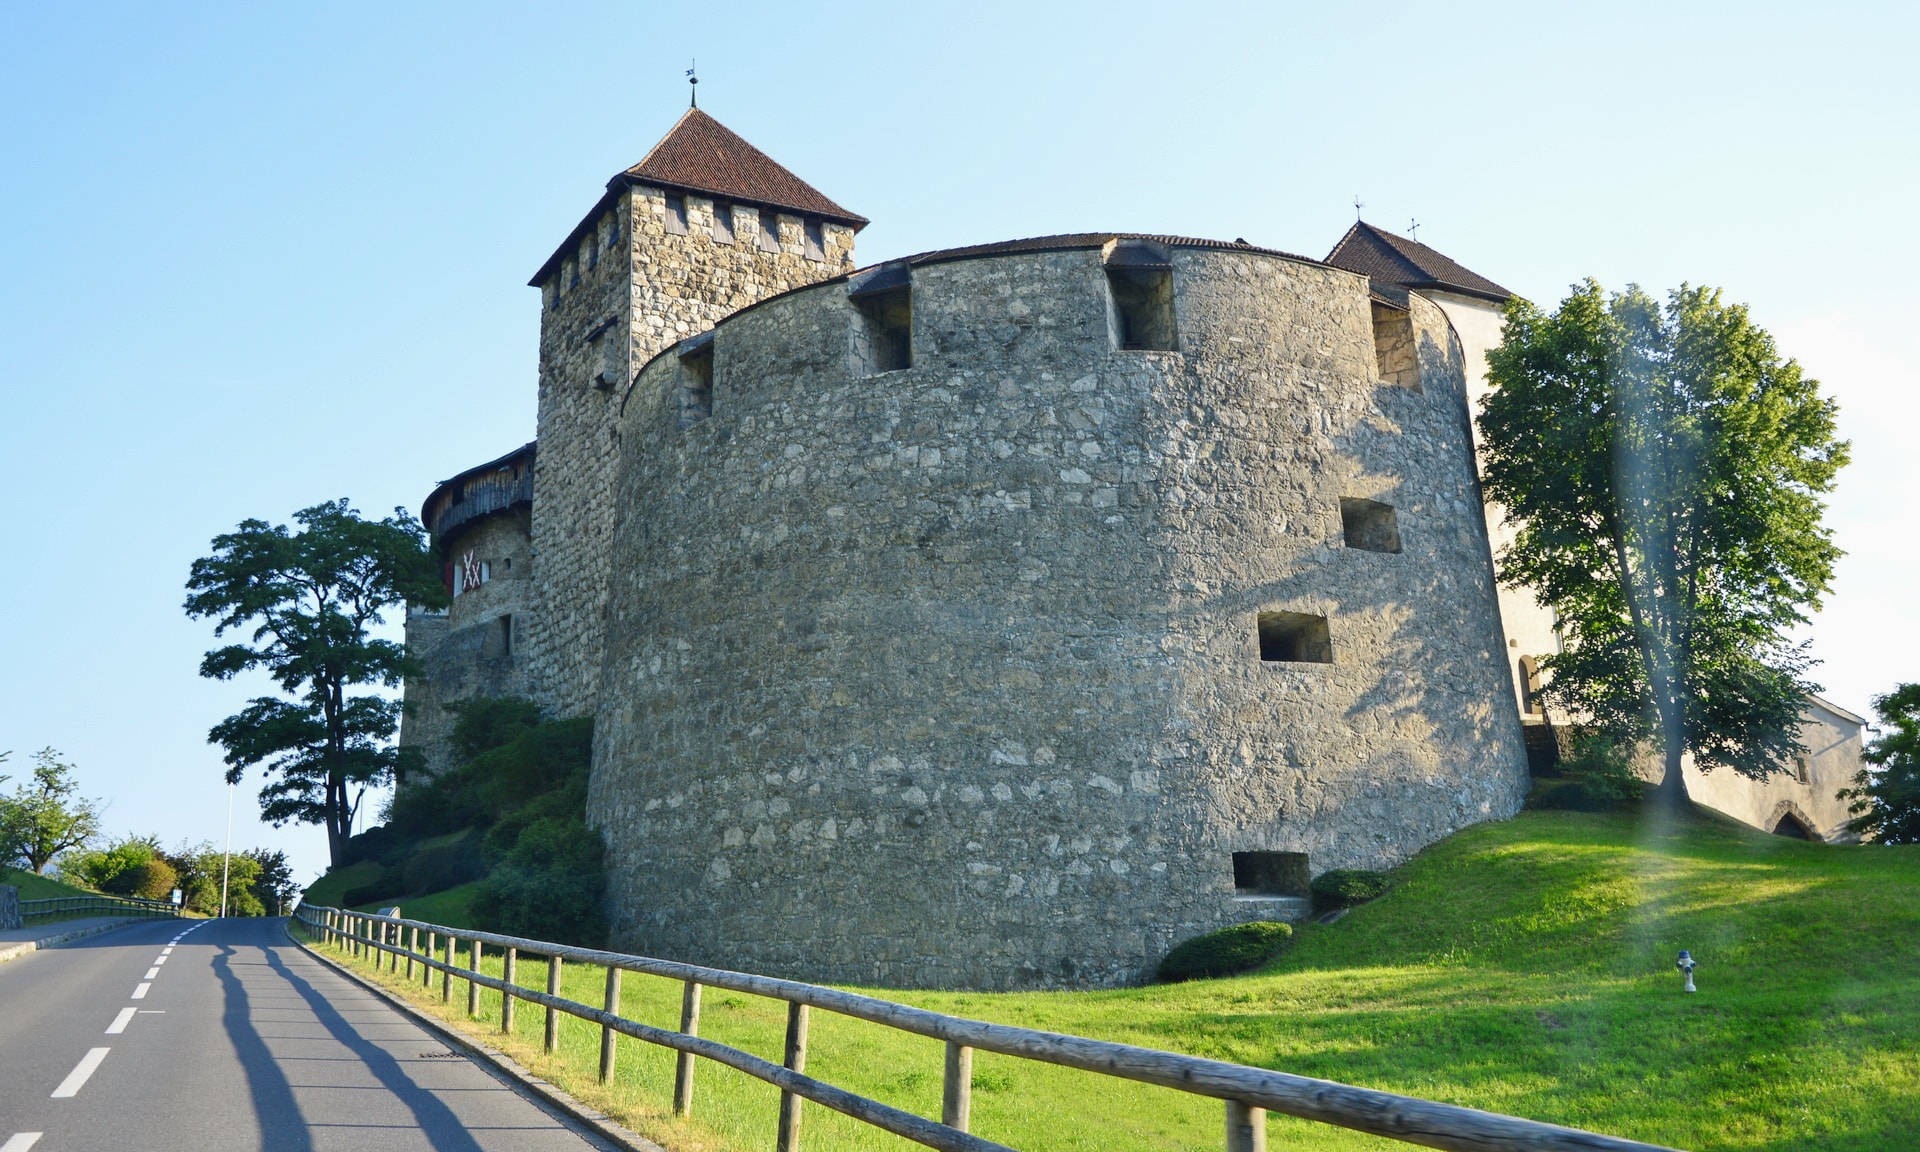 Approaching the Vaduz Castle